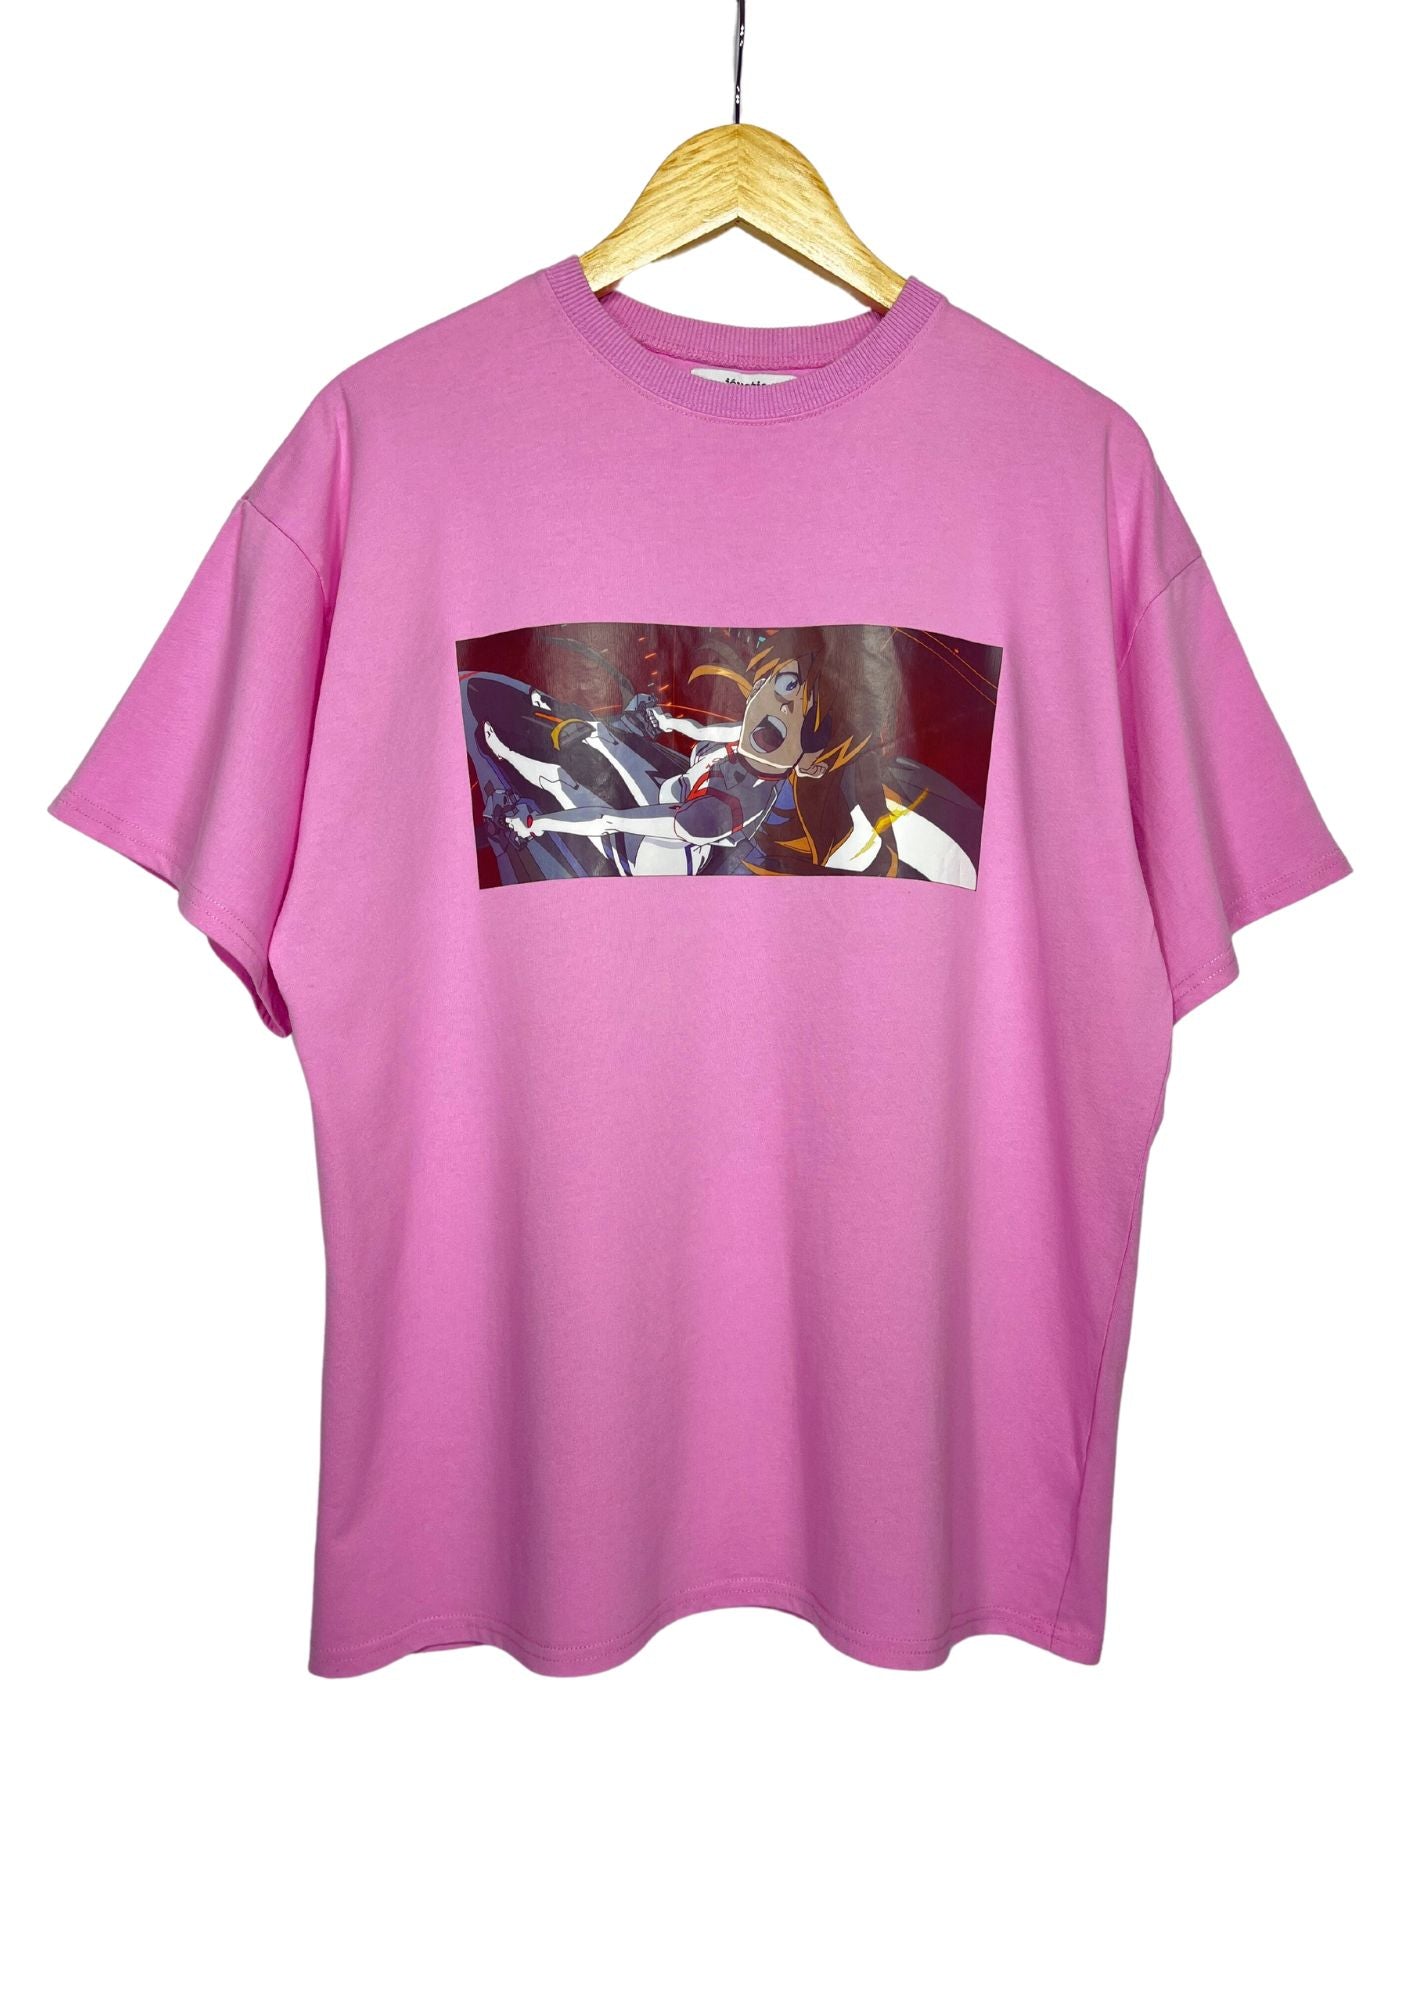 Neon Genesis Evangelion x Jouetie Bye Bye All Asuka T-shirt